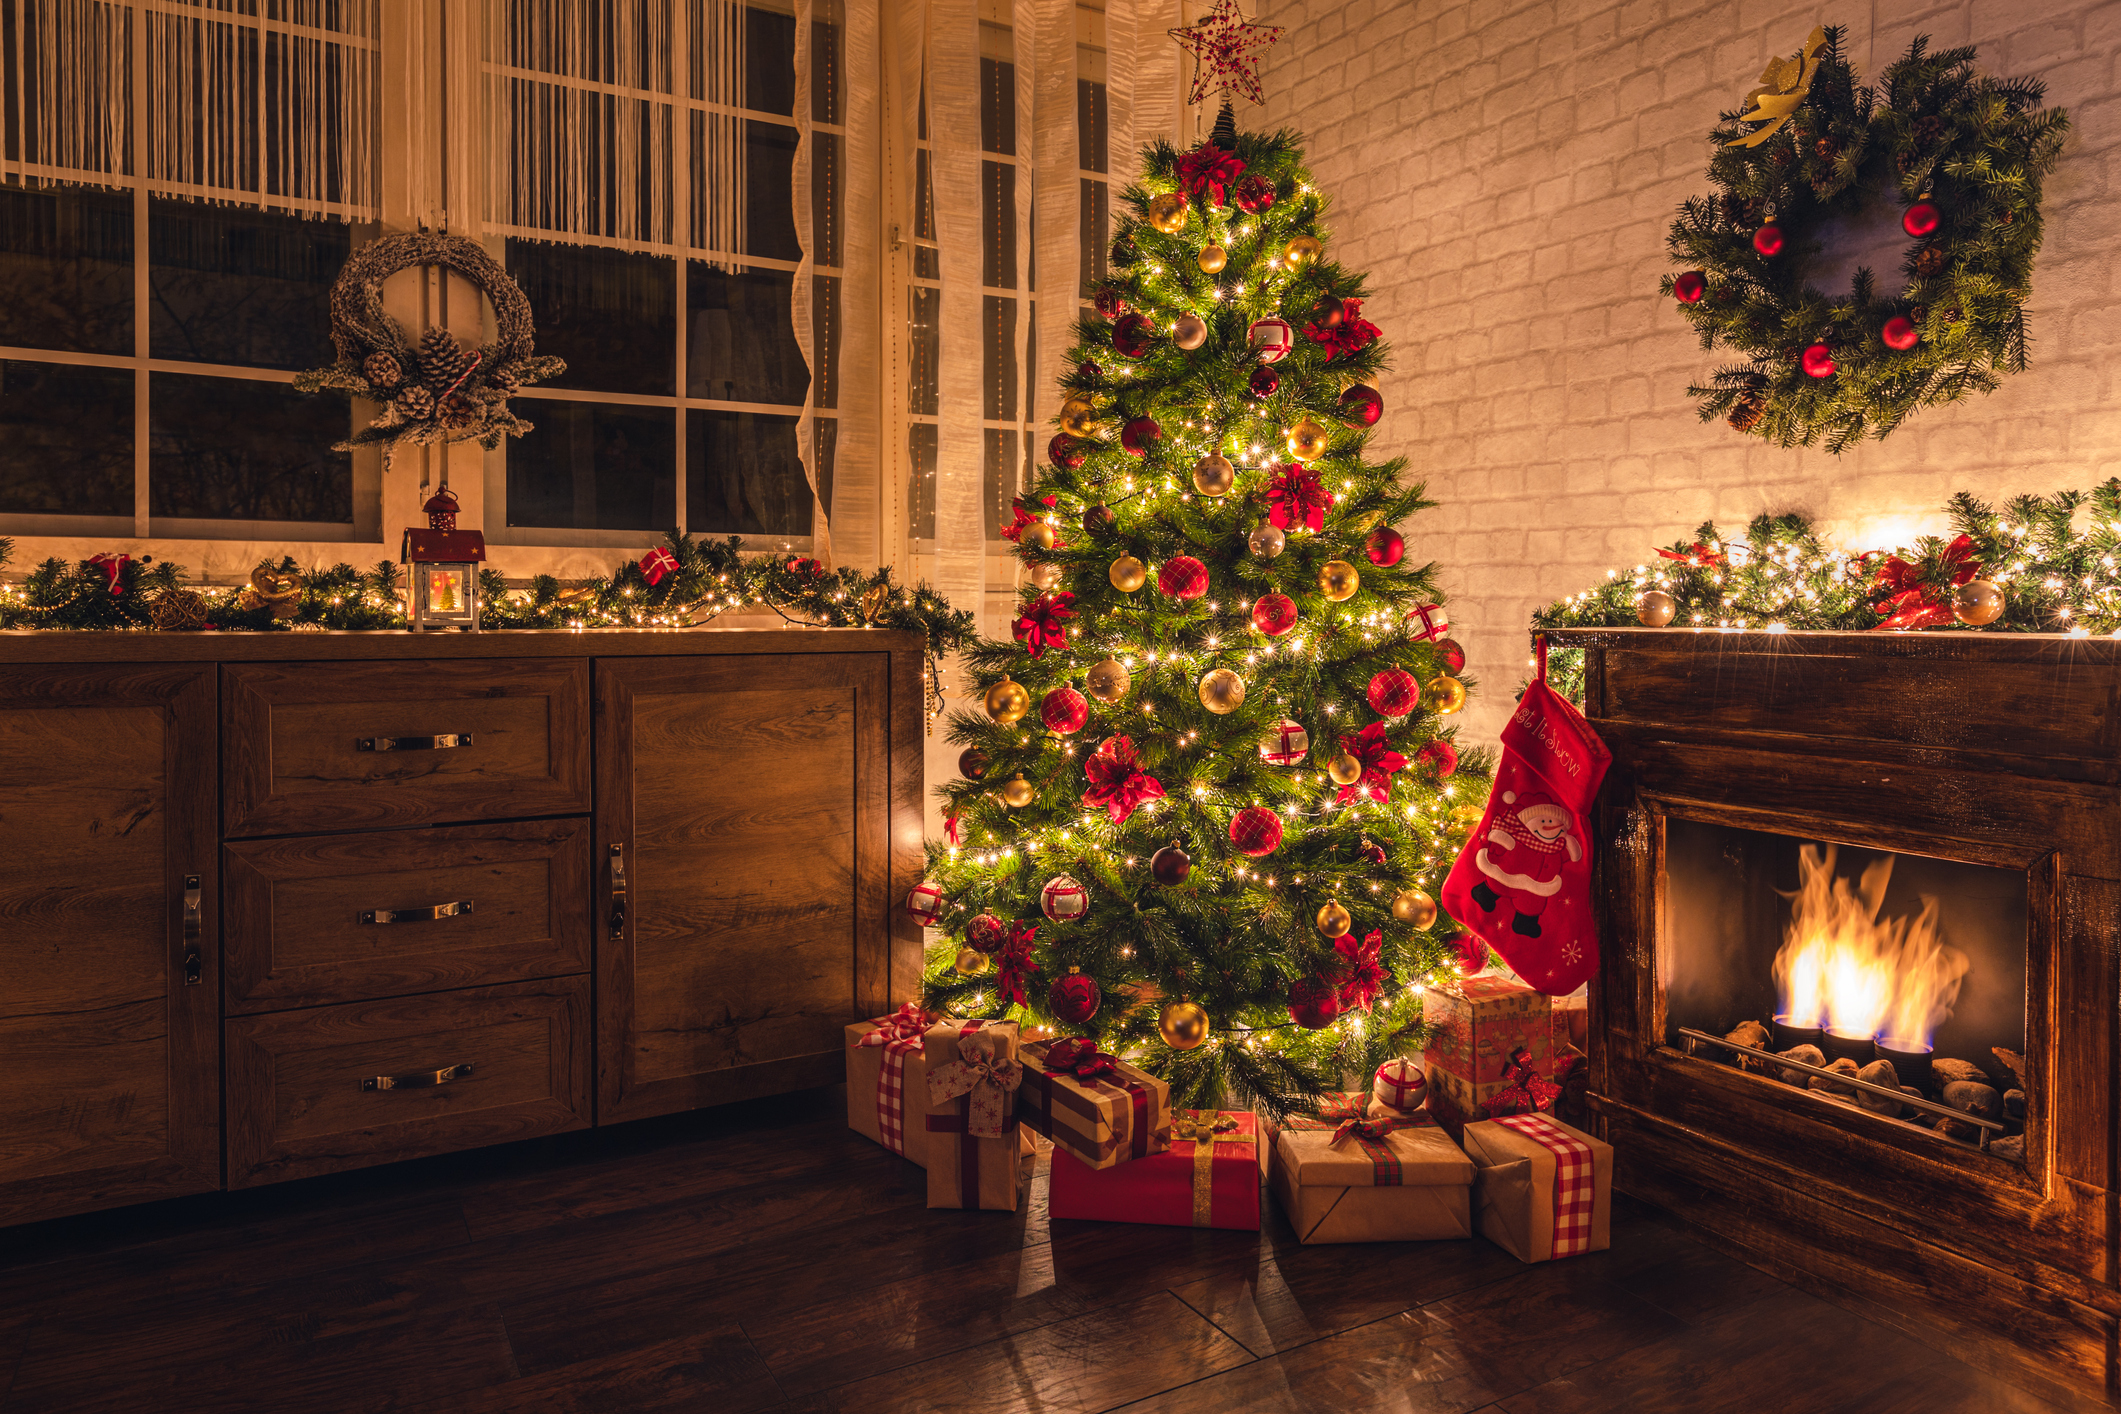 Imagem mostra uma árvore de Natal, decorada com luzes, bolas e outros enfeites, na sala de uma casa com lareira e outros enfeites de Natal. Embaixo da árvore estão os presentes de Natal.